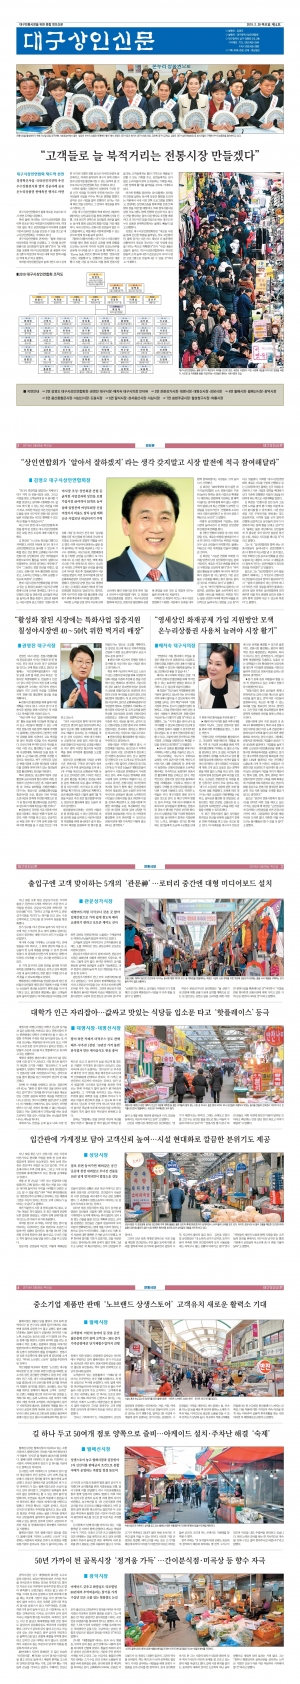 대구상인신문 2018 - 제4호(2019.2.28) 